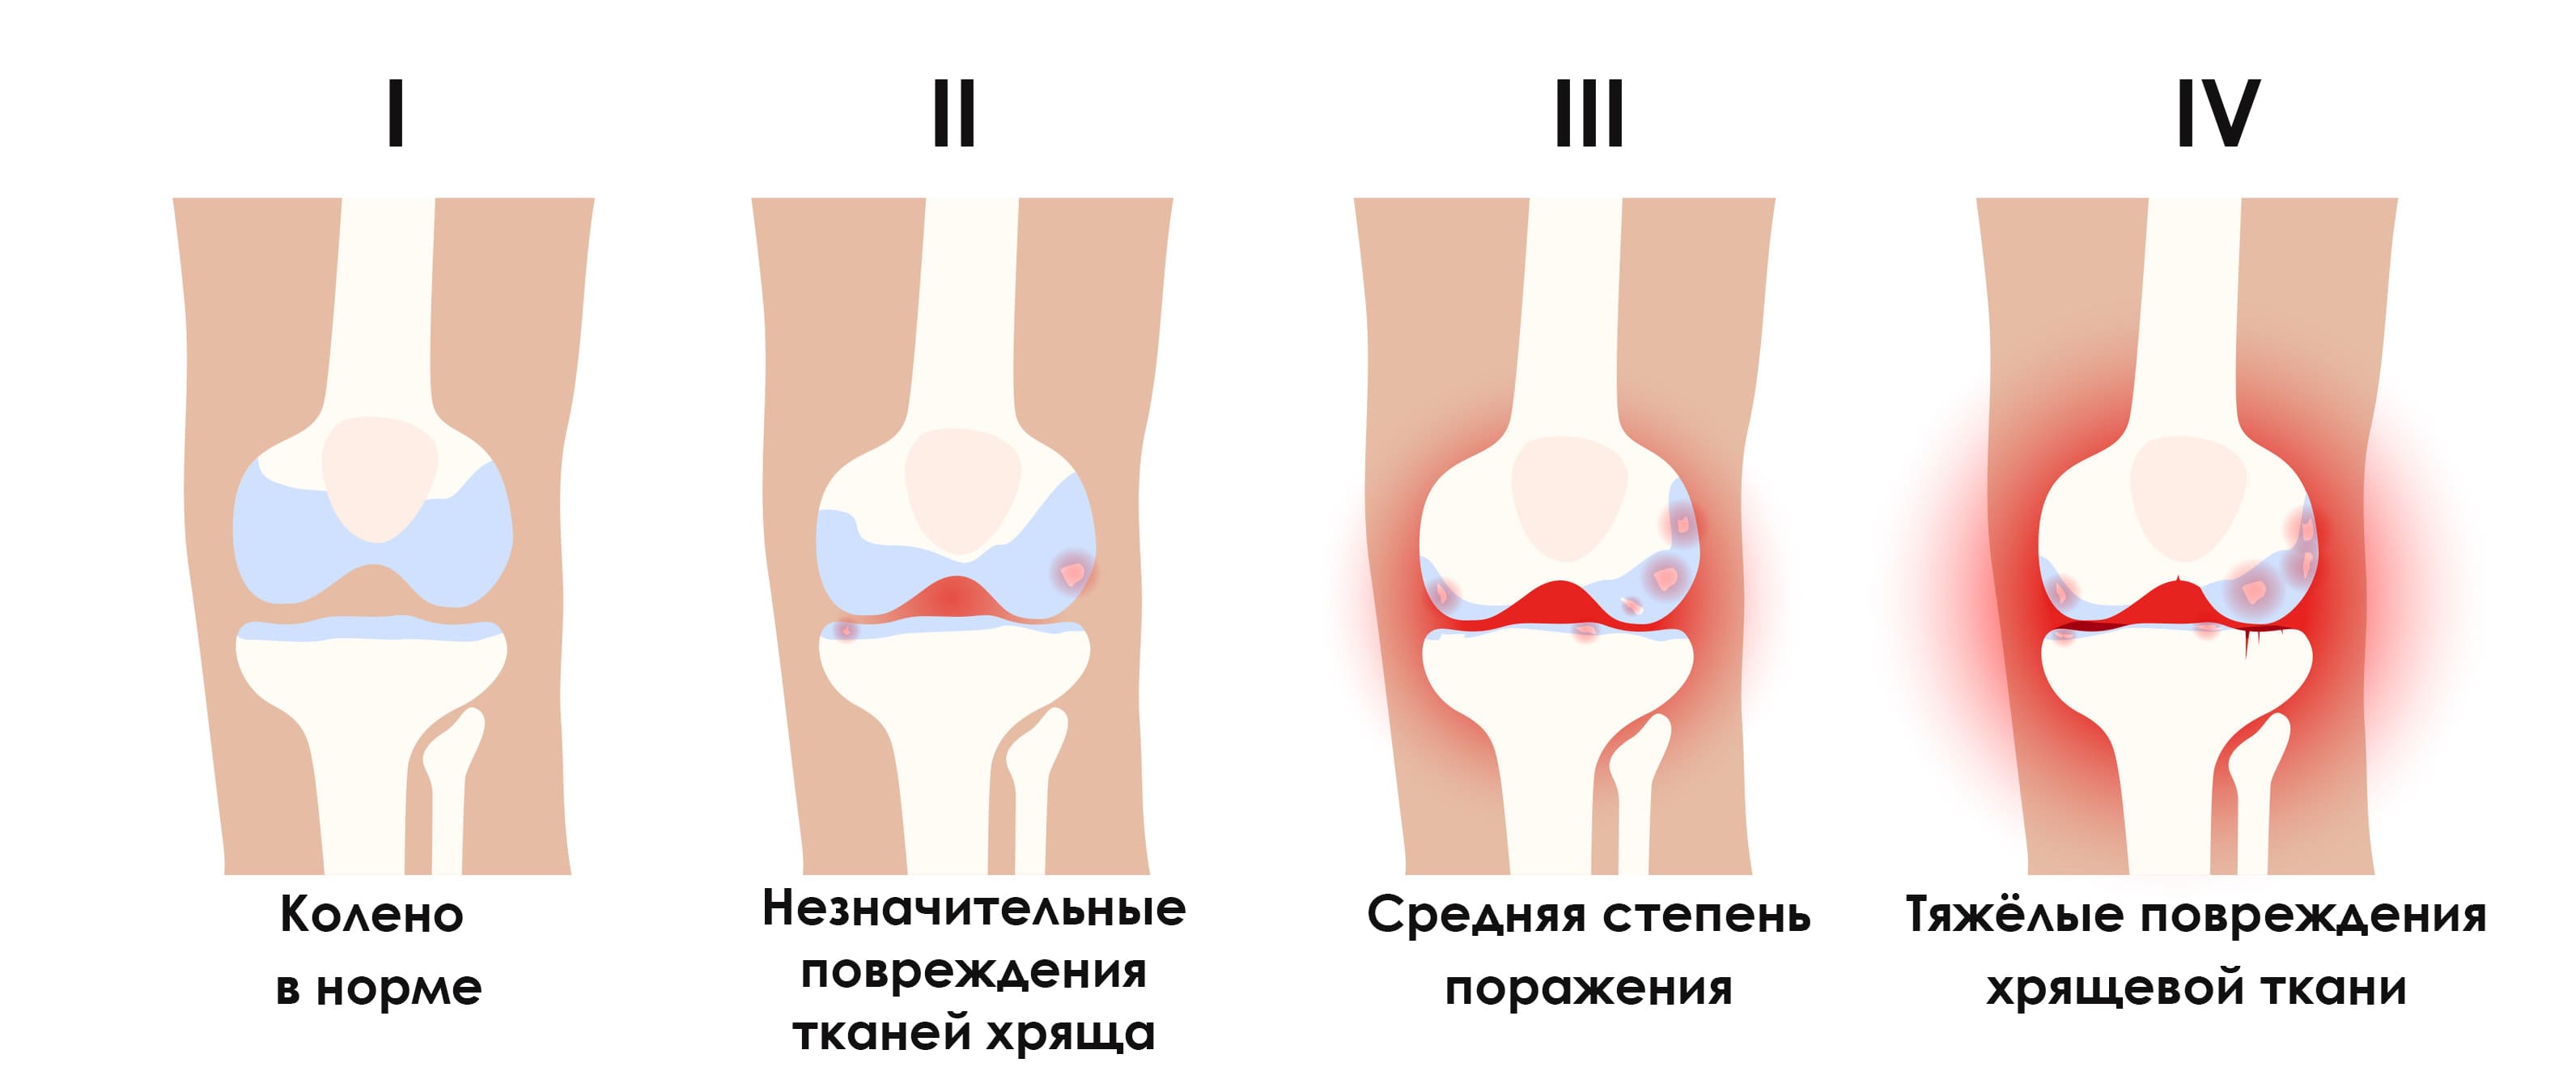 Деформирующий артроз коленного сустава (гонартроз)